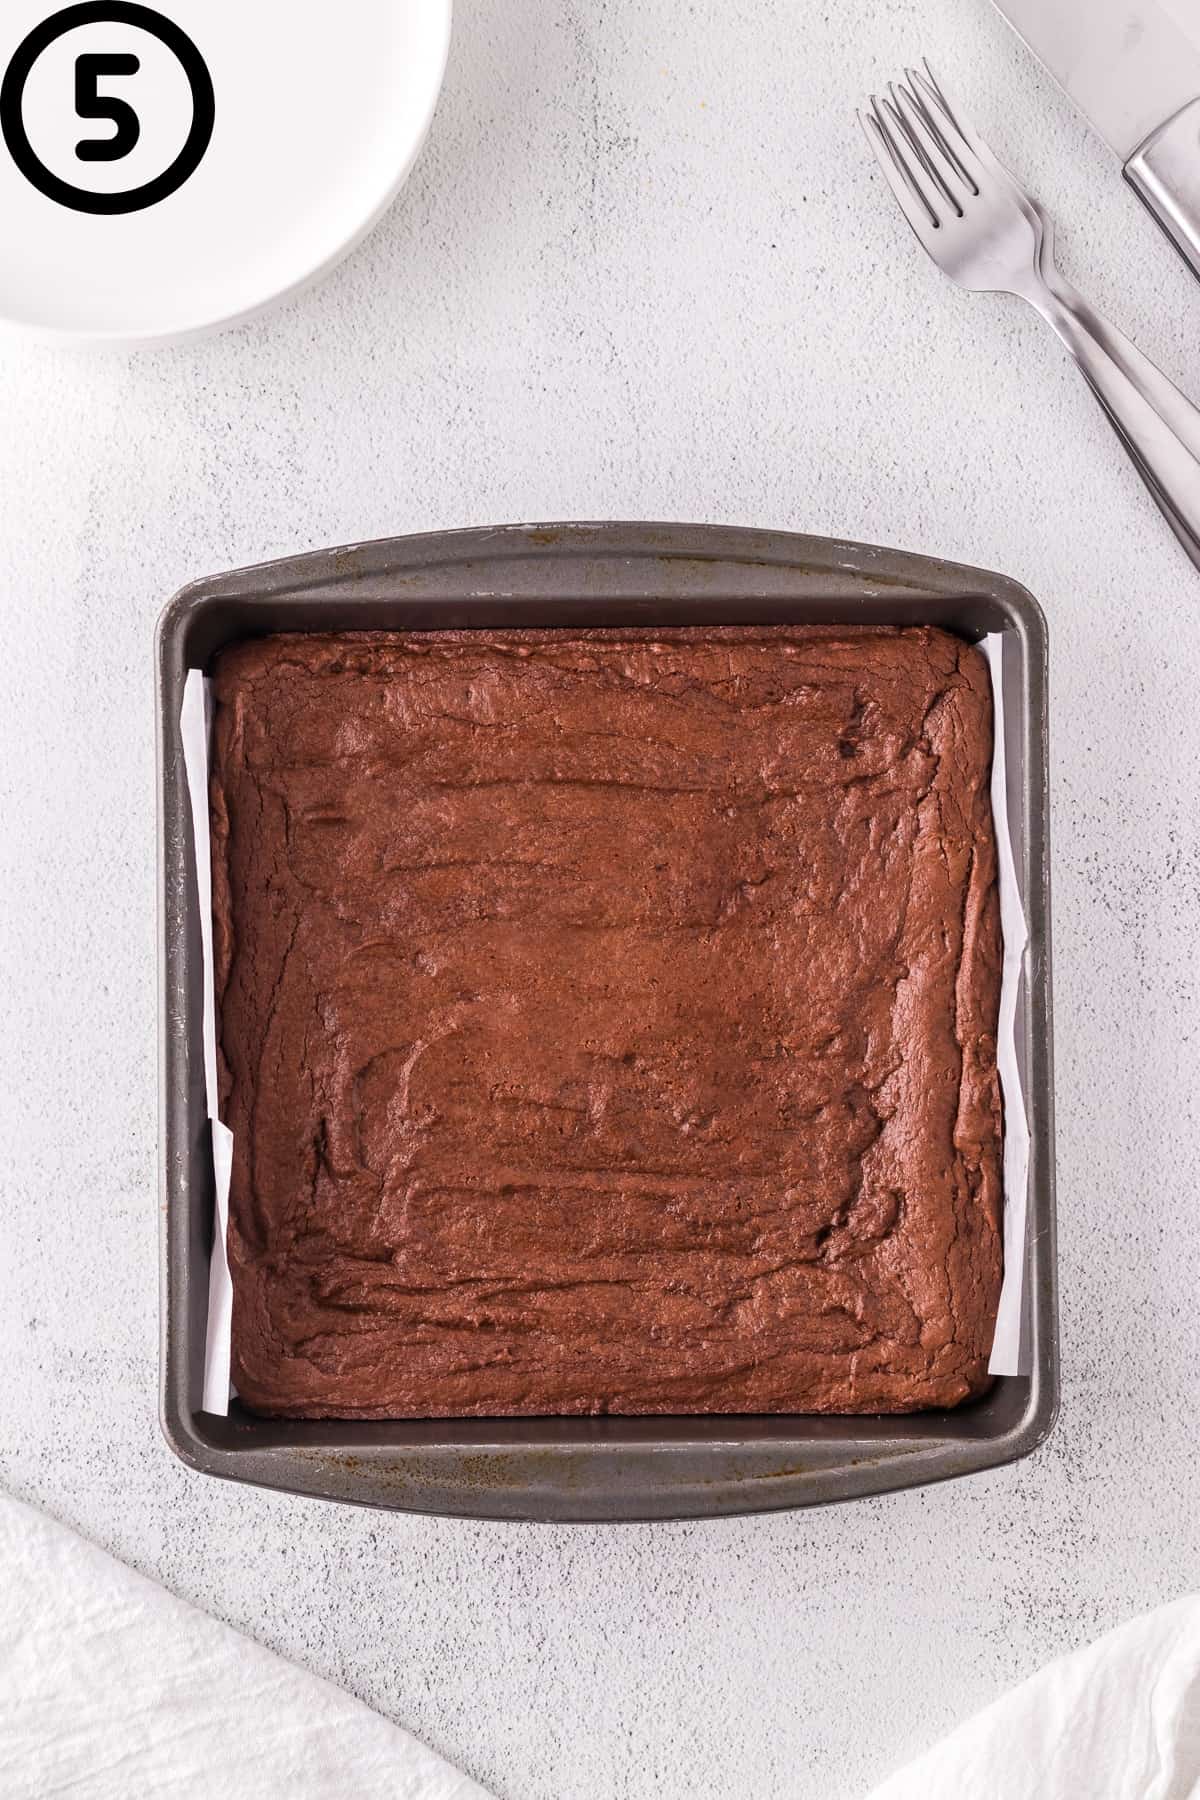 Baked dairy-free brownies in a pan.